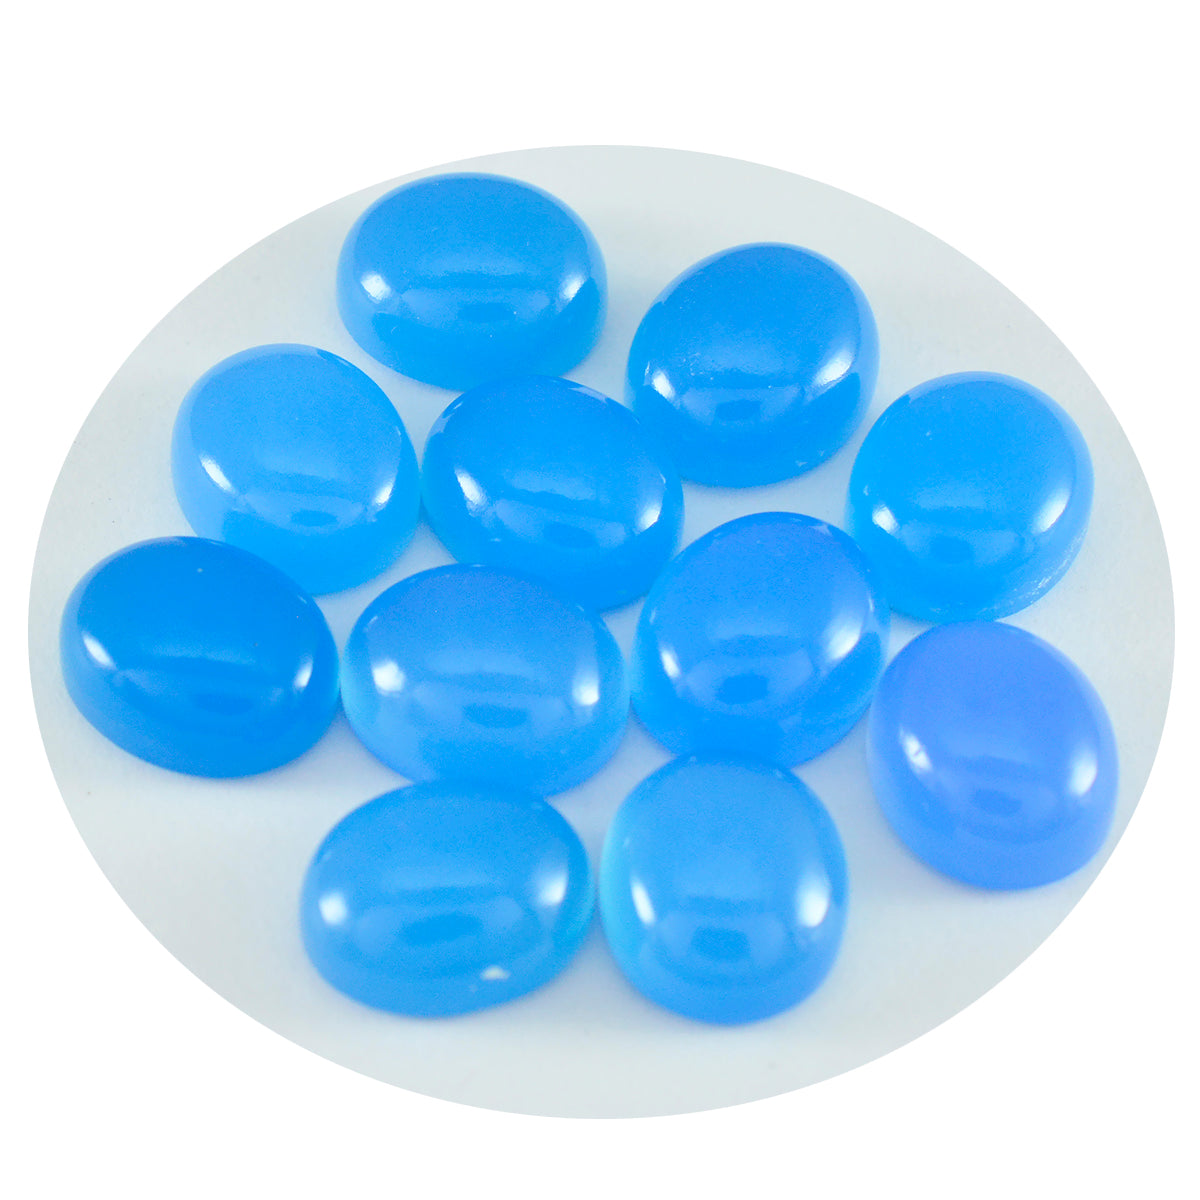 Riyogems 1PC blauwe chalcedoon cabochon 5x7 mm ovale vorm verrassende kwaliteit edelsteen